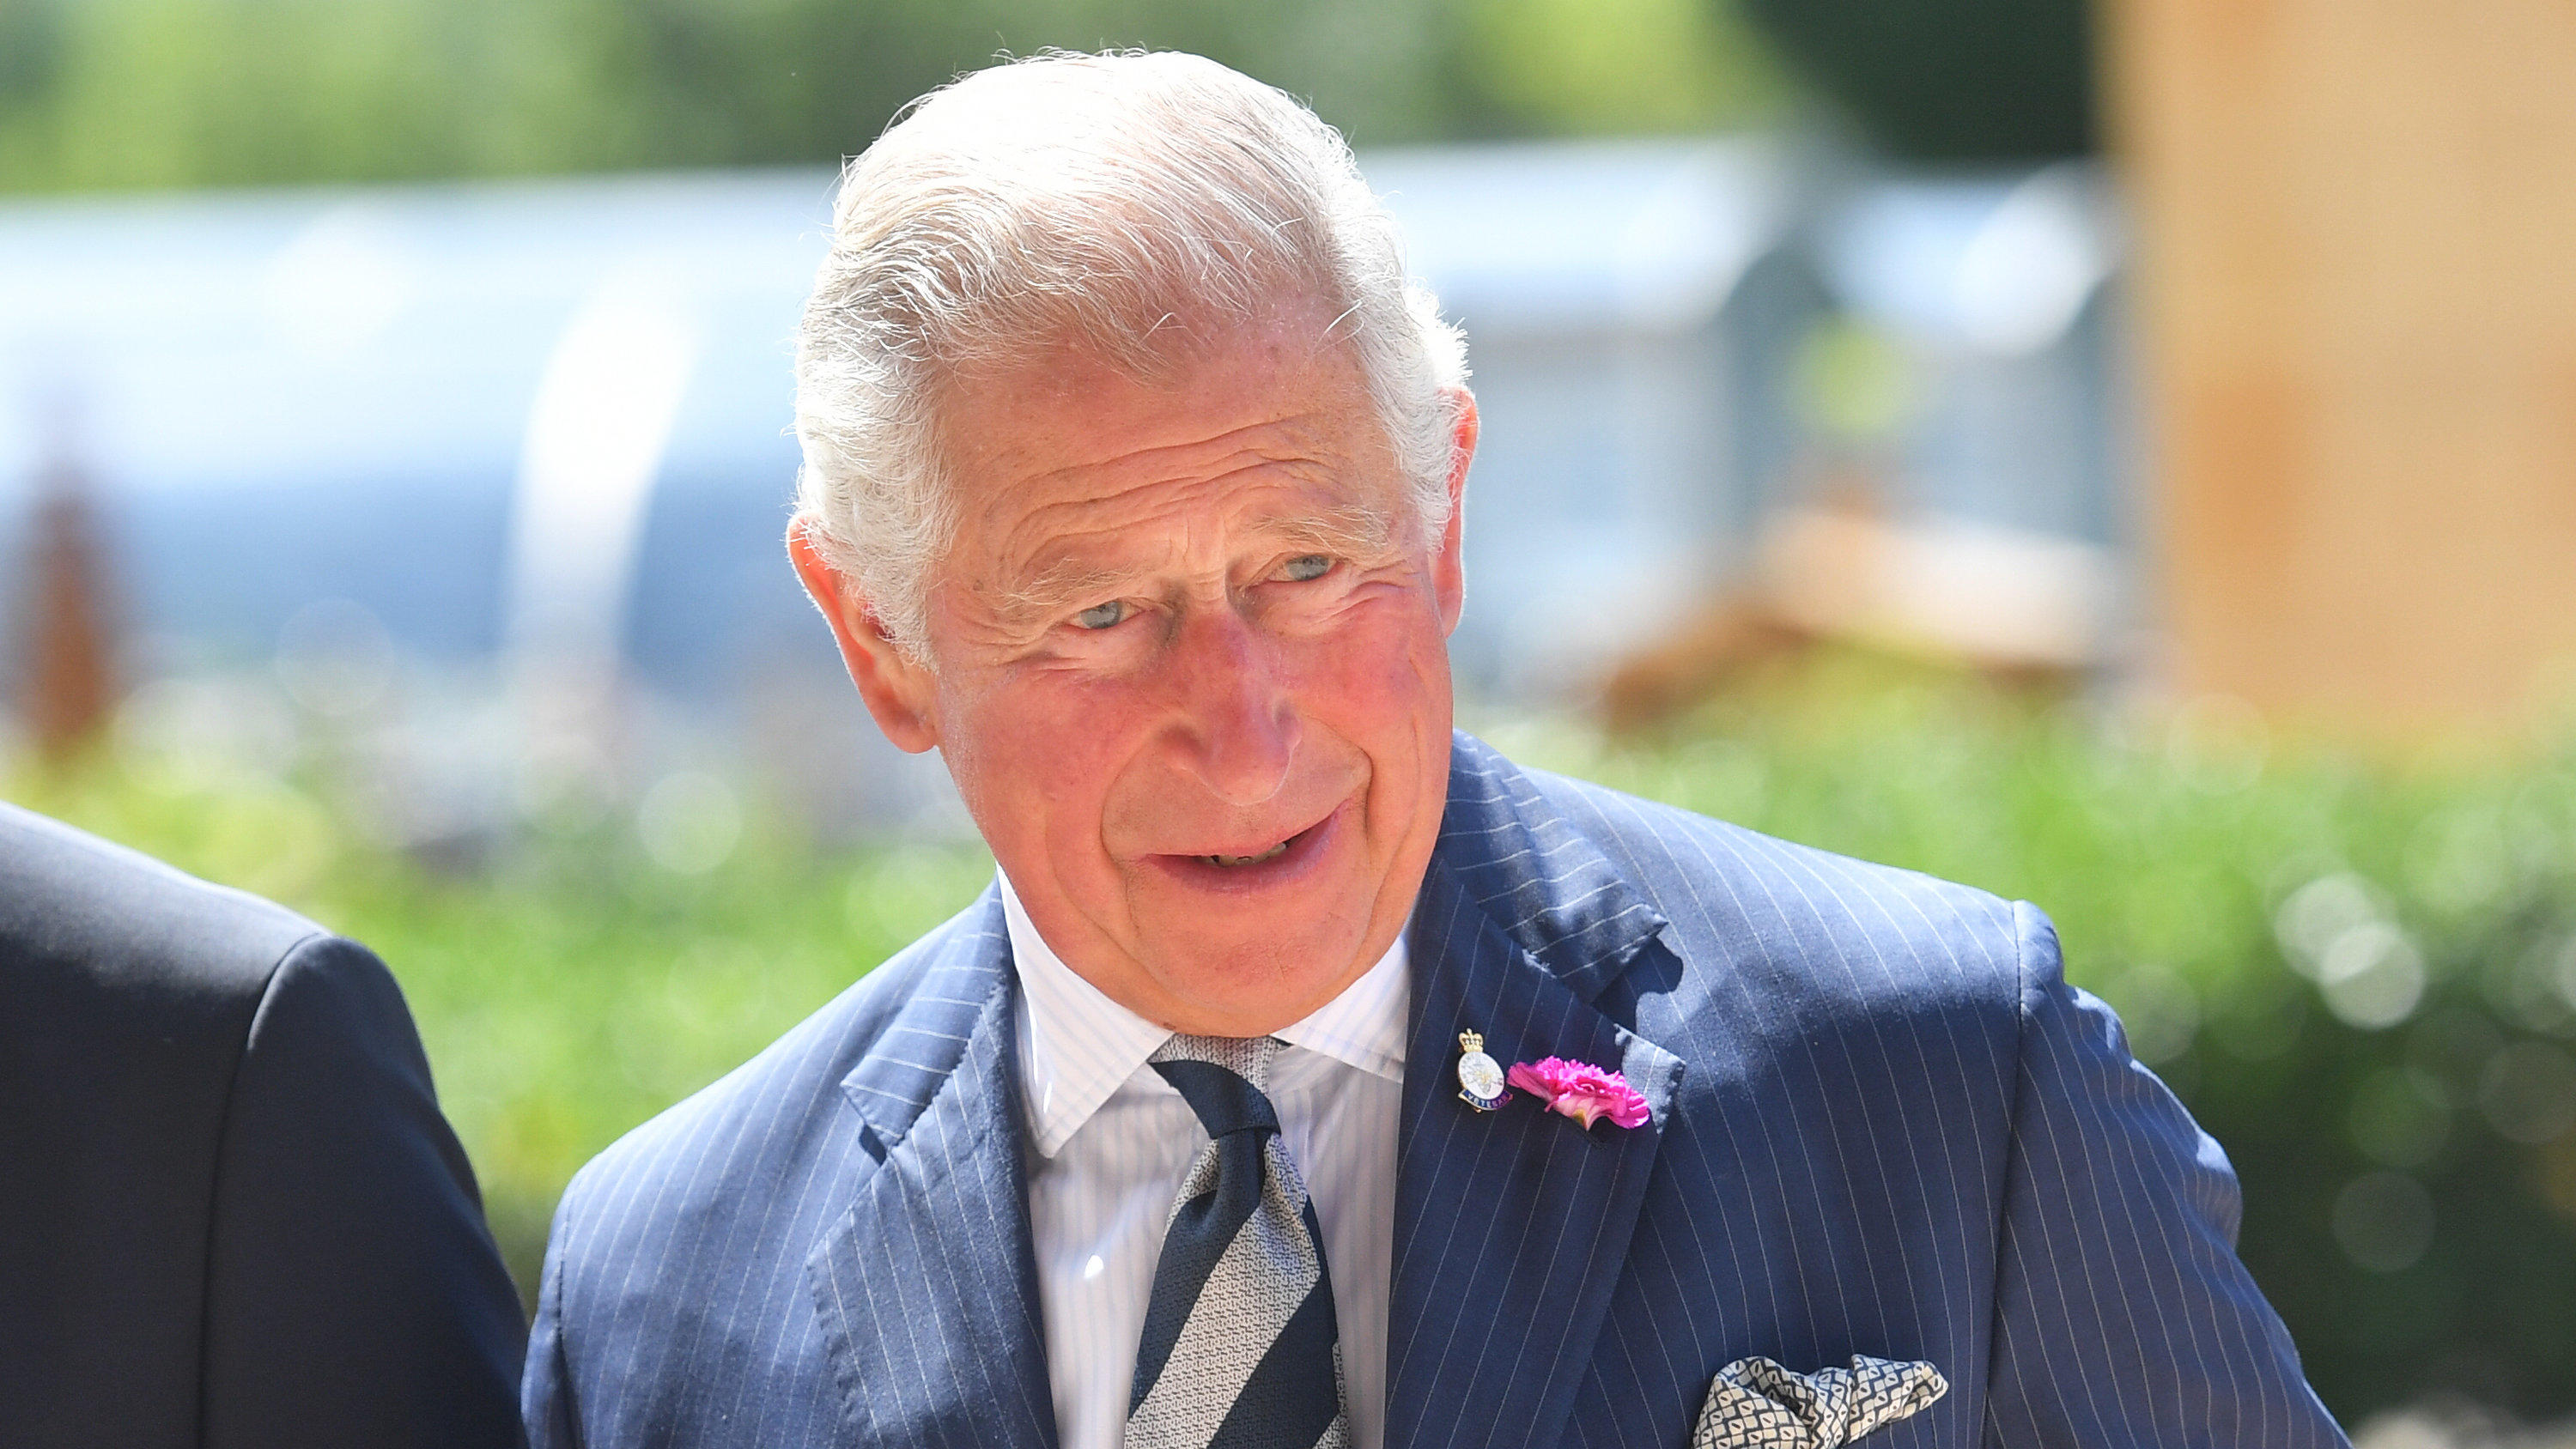 12.07.2019, Großbritannien, Cheltenham: Der britische Prinz Charles, Prinz von Wales, kommt bei der Jubiläumsfeier von dem Government Communications Headquarters an. Foto: Jacob King/PA Wire/dpa +++ dpa-Bildfunk +++